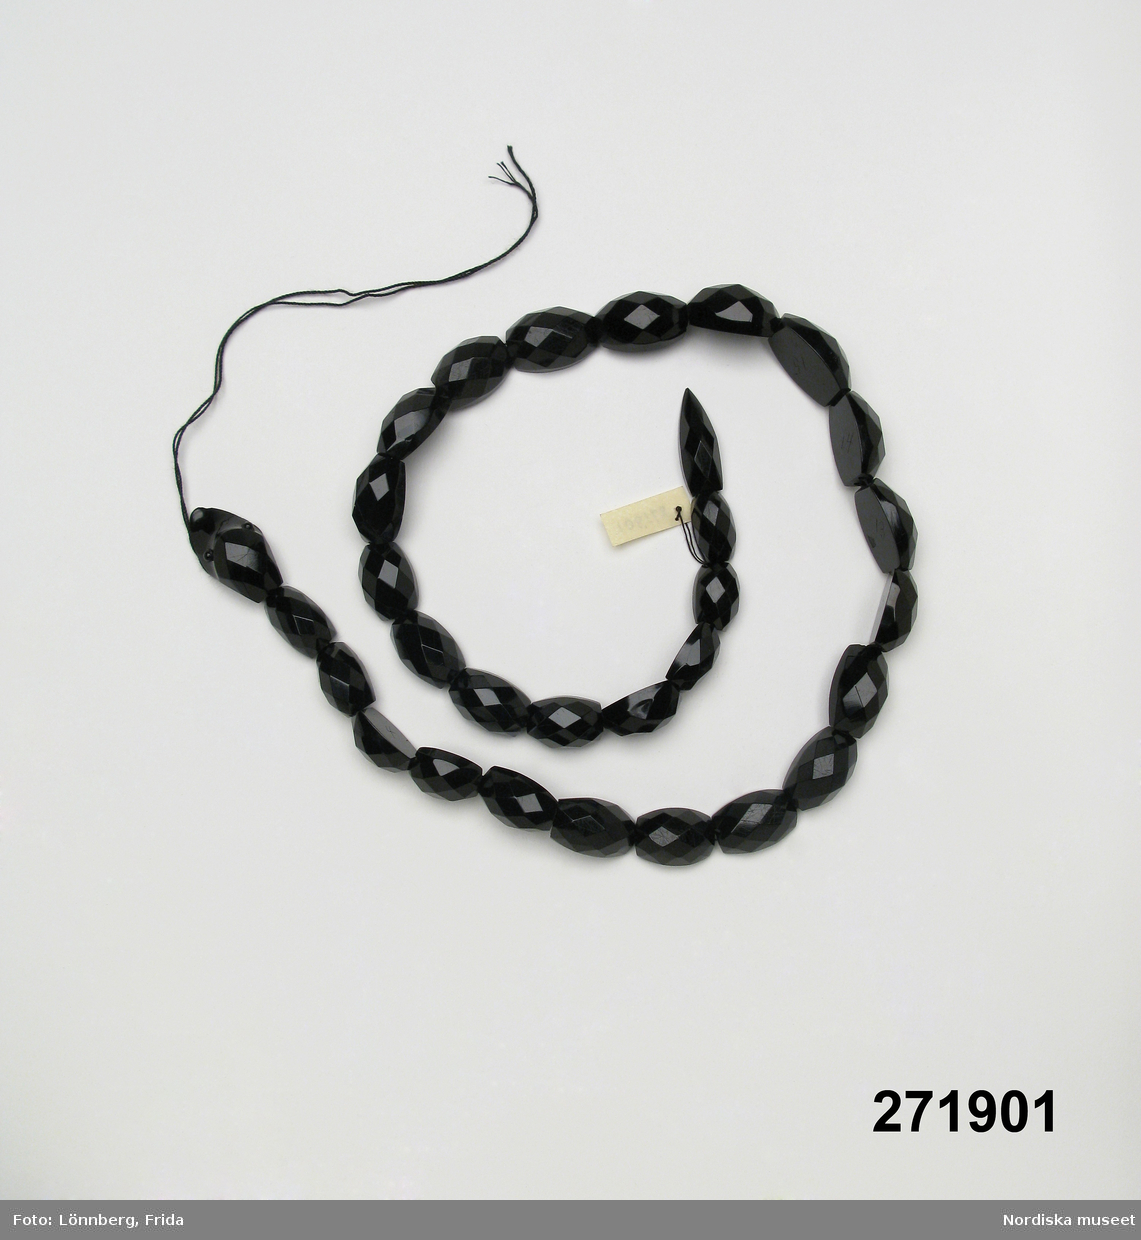 Huvudliggaren:
"Halsband?, svart konstmassa; kedja i form av orm; 30 st facetterade numrerade delar uppträdda på svart snodd. L 58 cm. Tillh. giv. mormor."